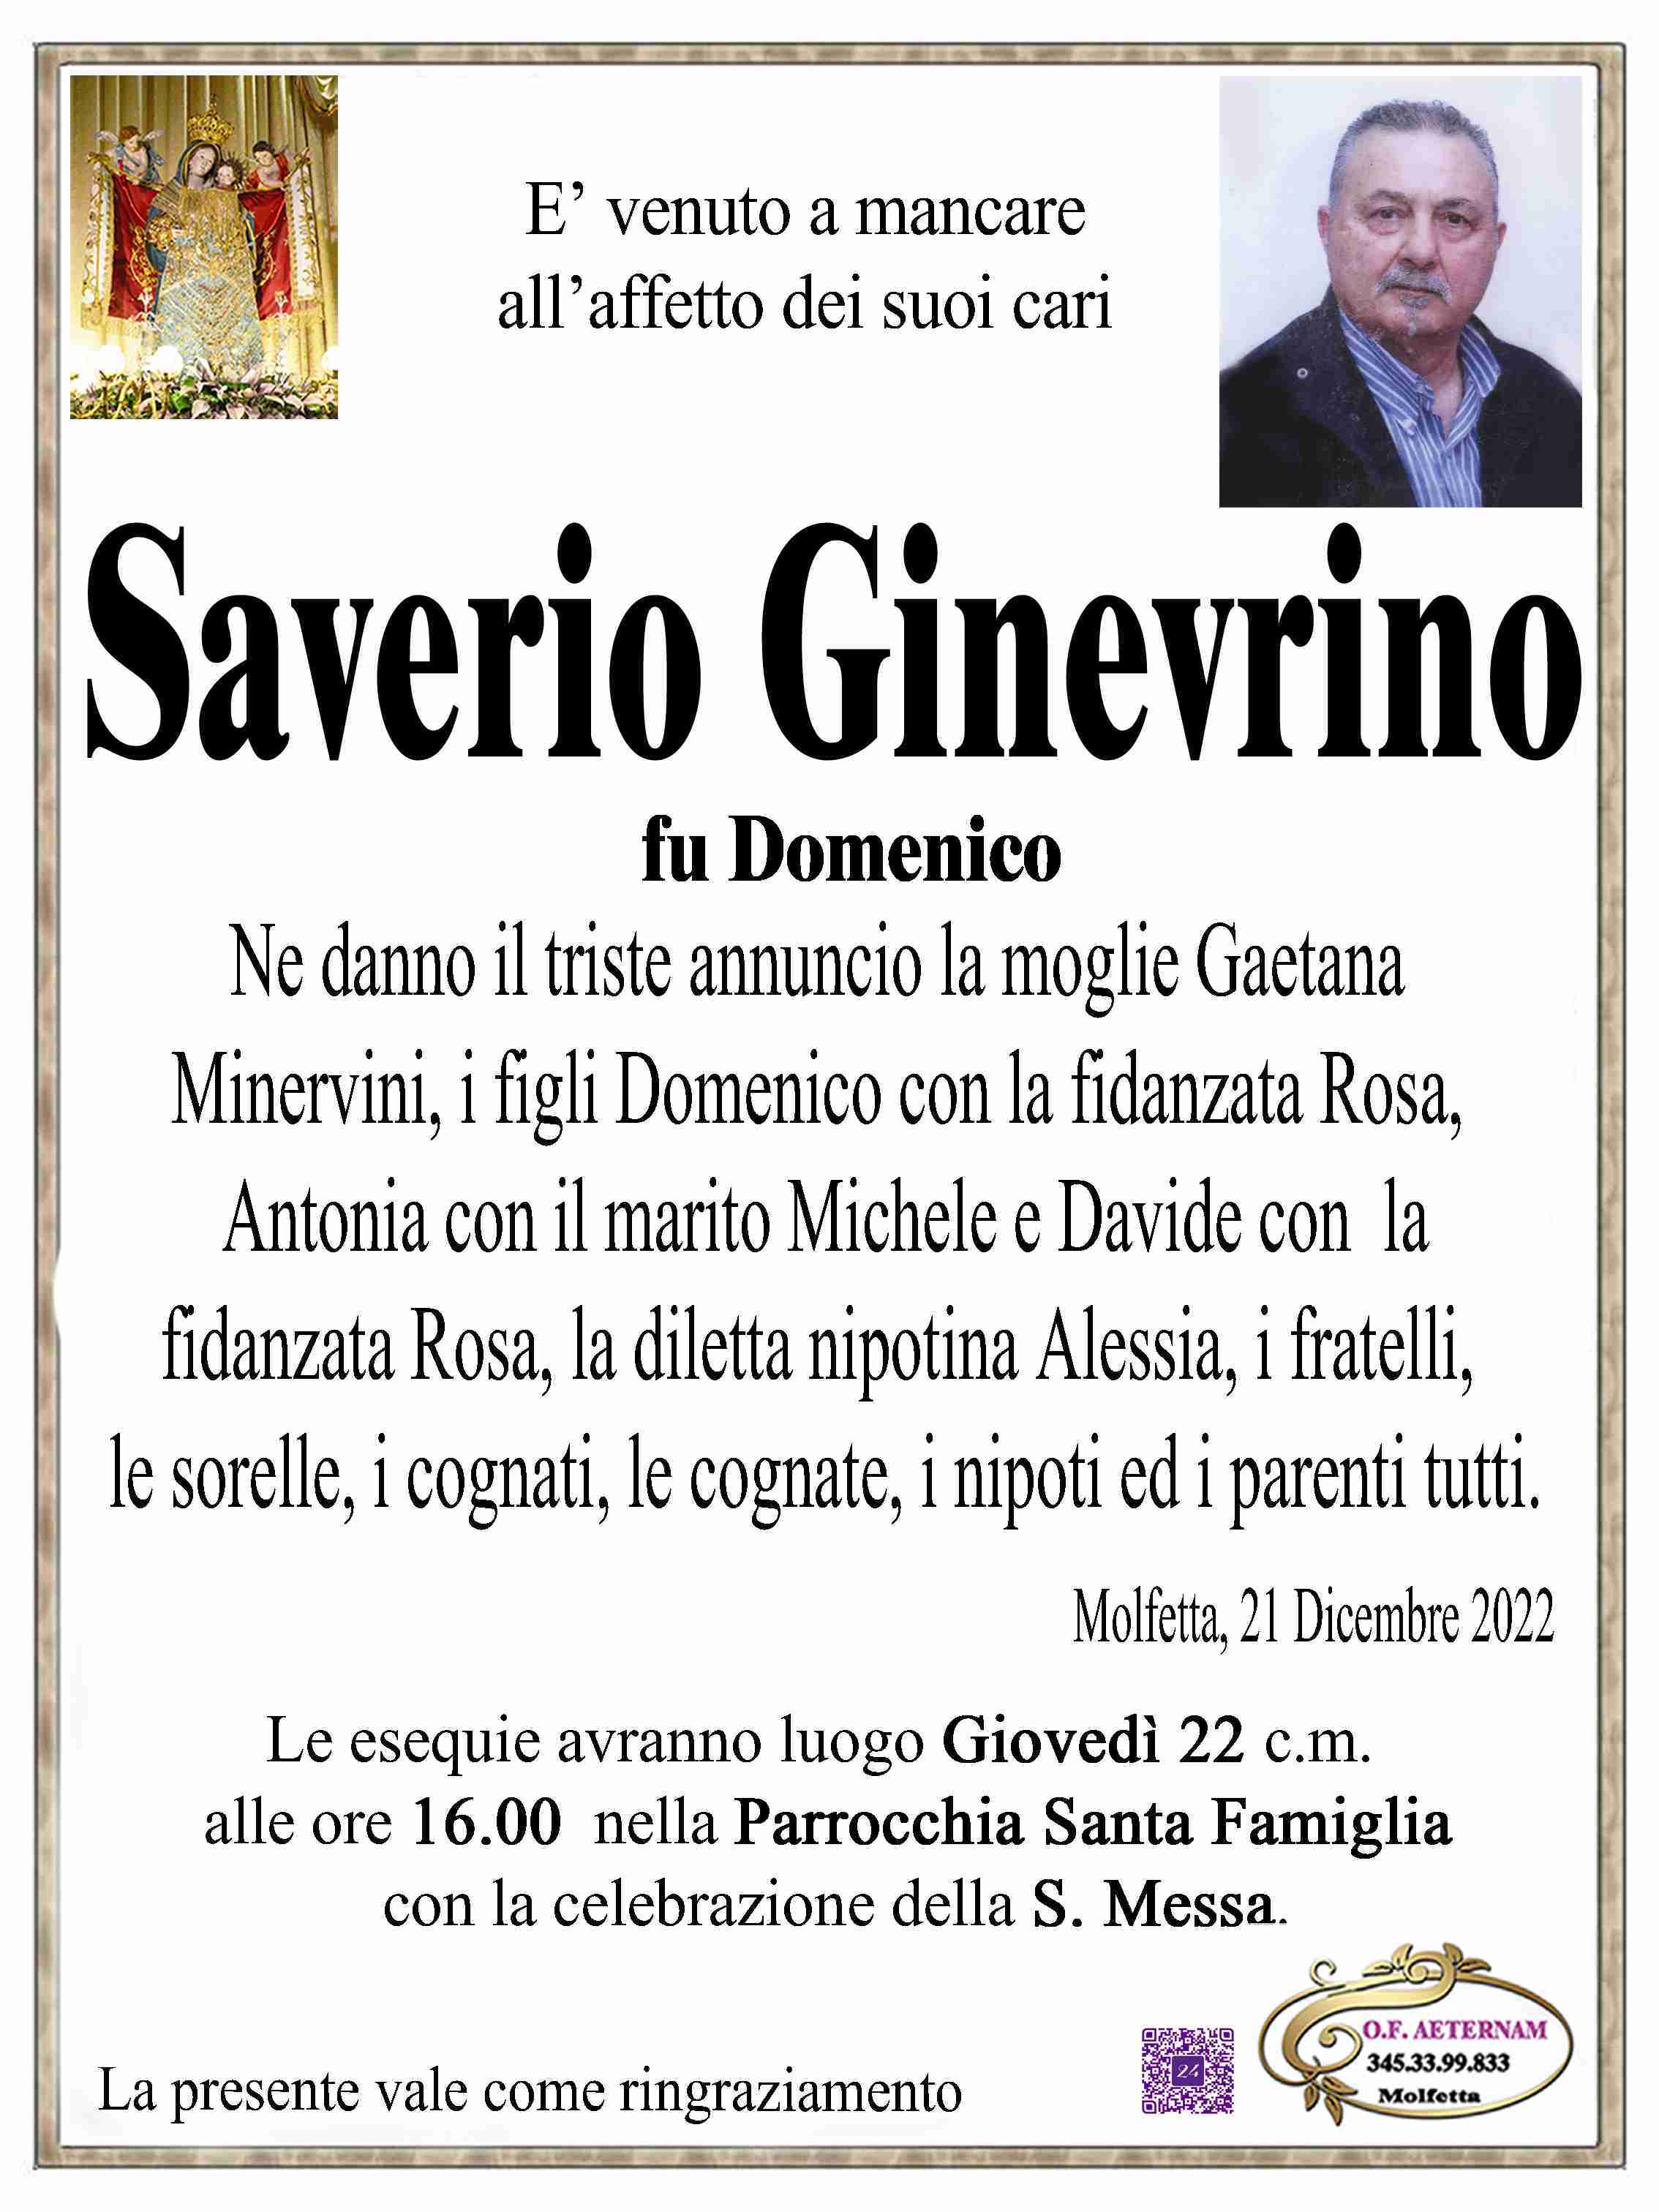 Saverio Ginevrino